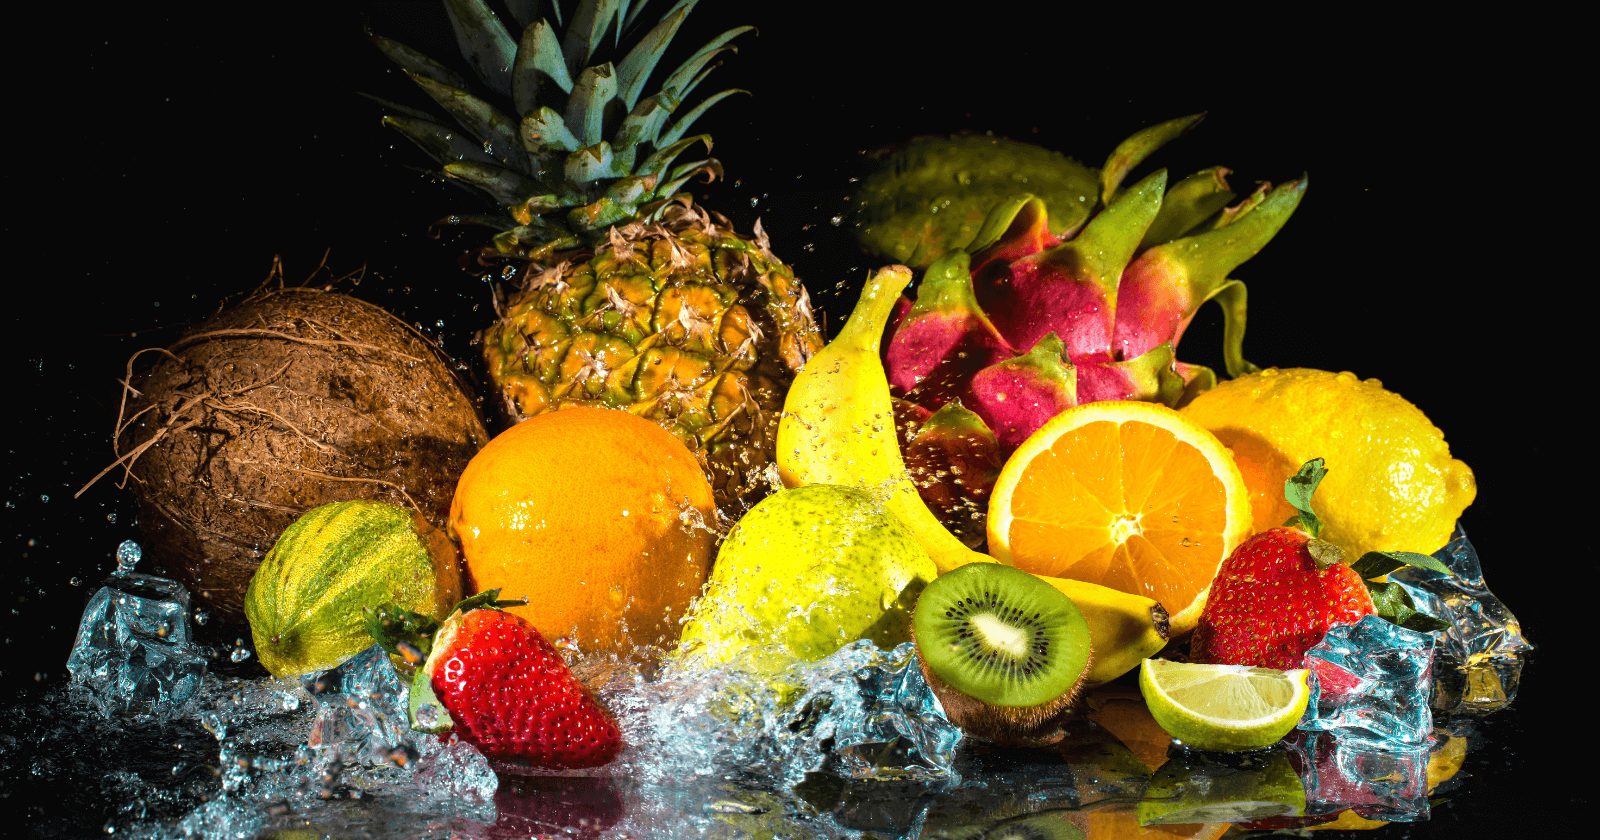 30 alimentos comuns que ajudam a hidratar o corpo e ótimos para períodos muito secos